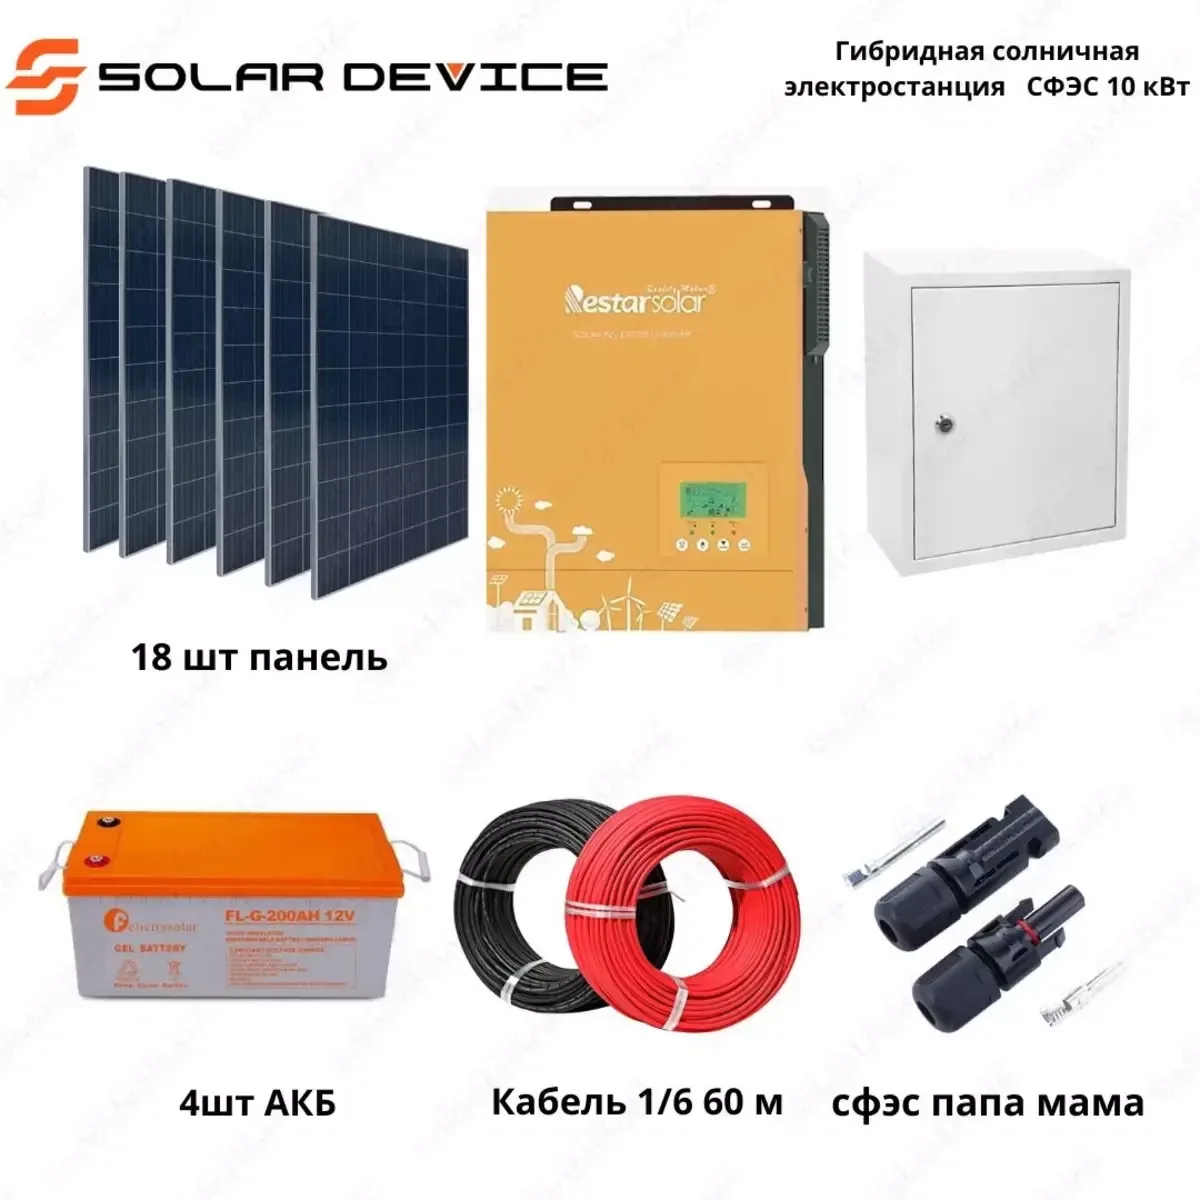 Гибридная солнечная электростанция "SOLAR" СФЭС (10 кВт)#1